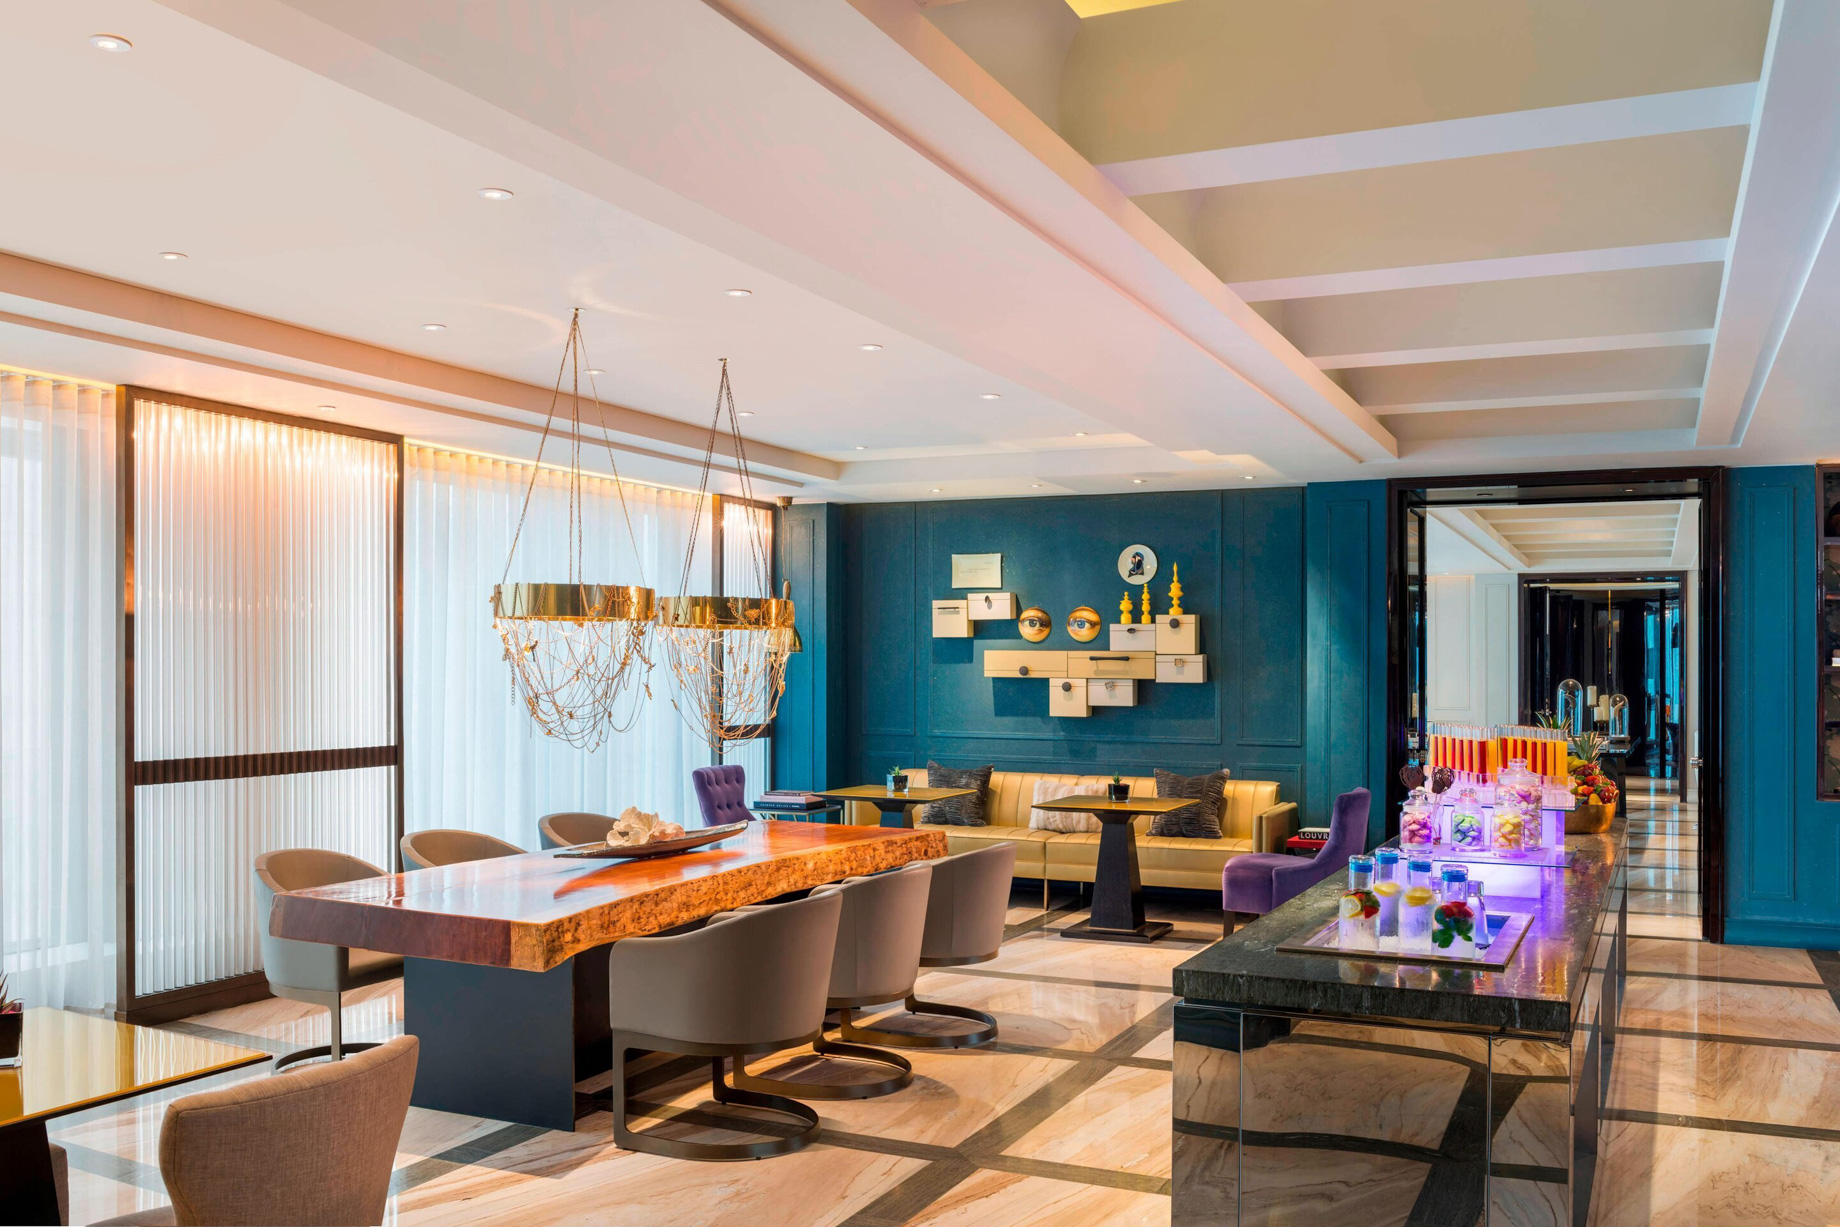 W Guangzhou Hotel – Tianhe District, Guangzhou, China – Club Lounge Decor